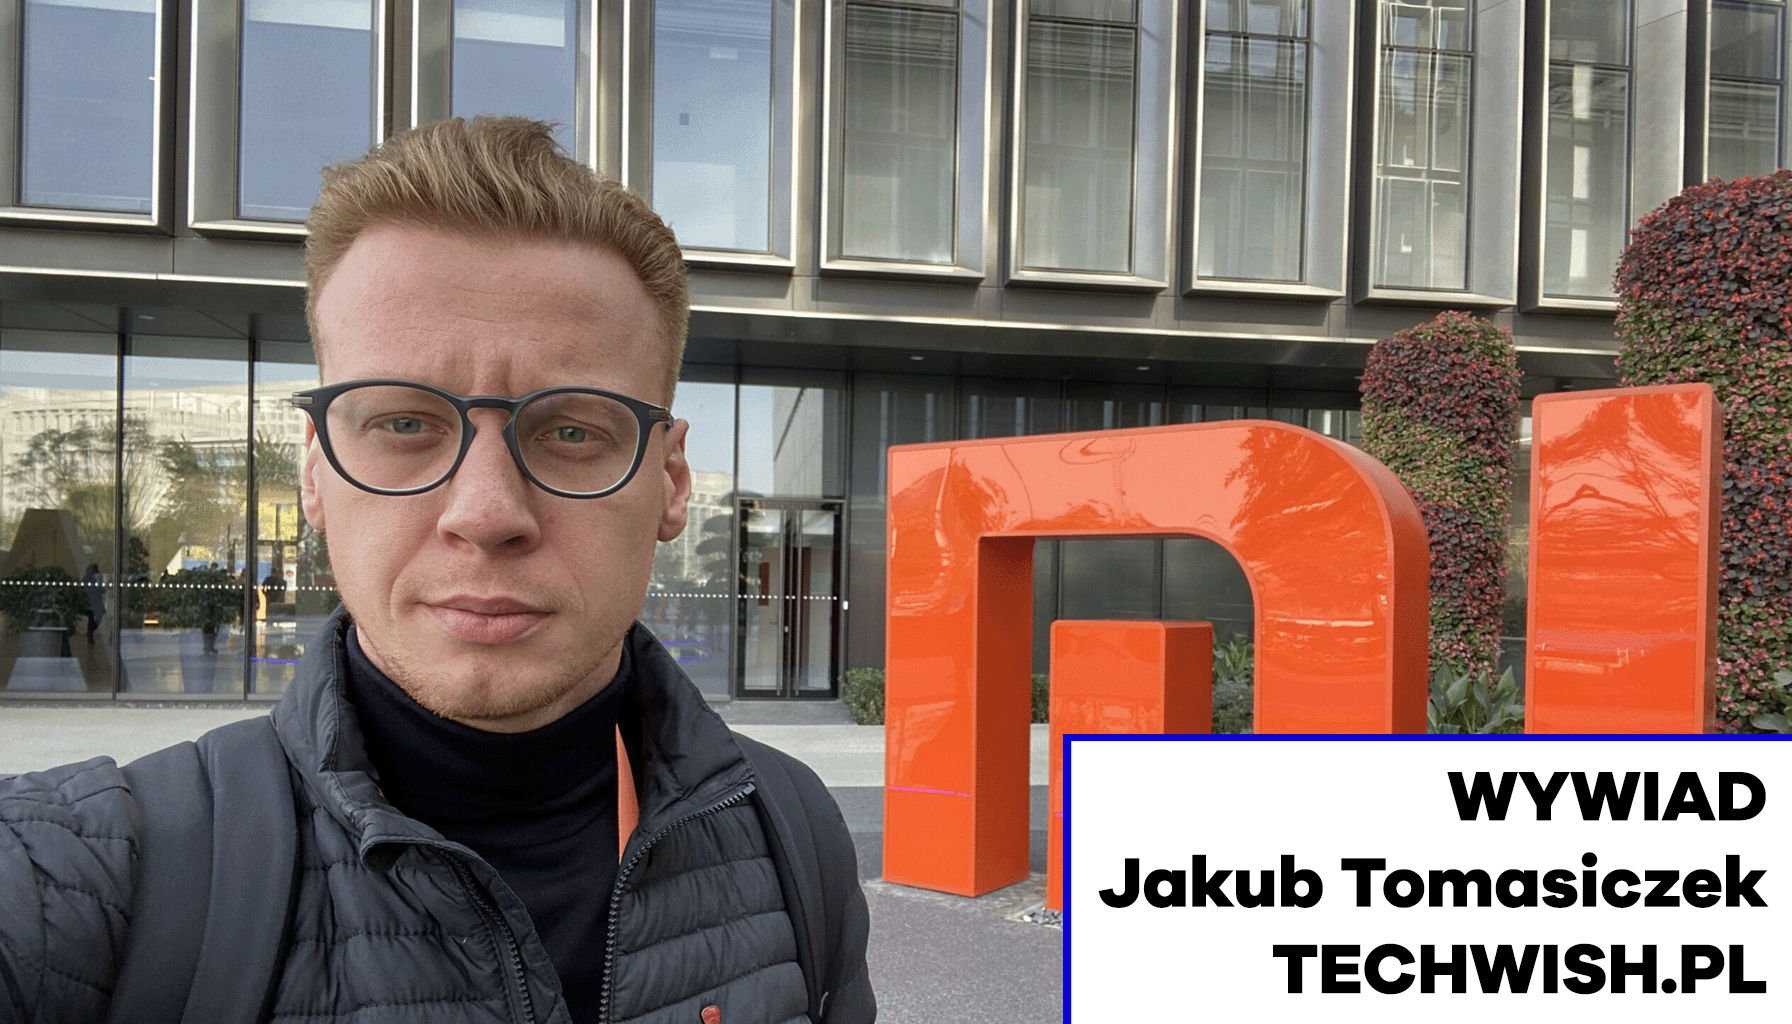 Wywiad z Jakubem Tomasiczkiem – założycielem Techwish.pl Wywiad MEDIARUN.COM JAKUB TOMASICZEK TECHWISH WYWIAD V2